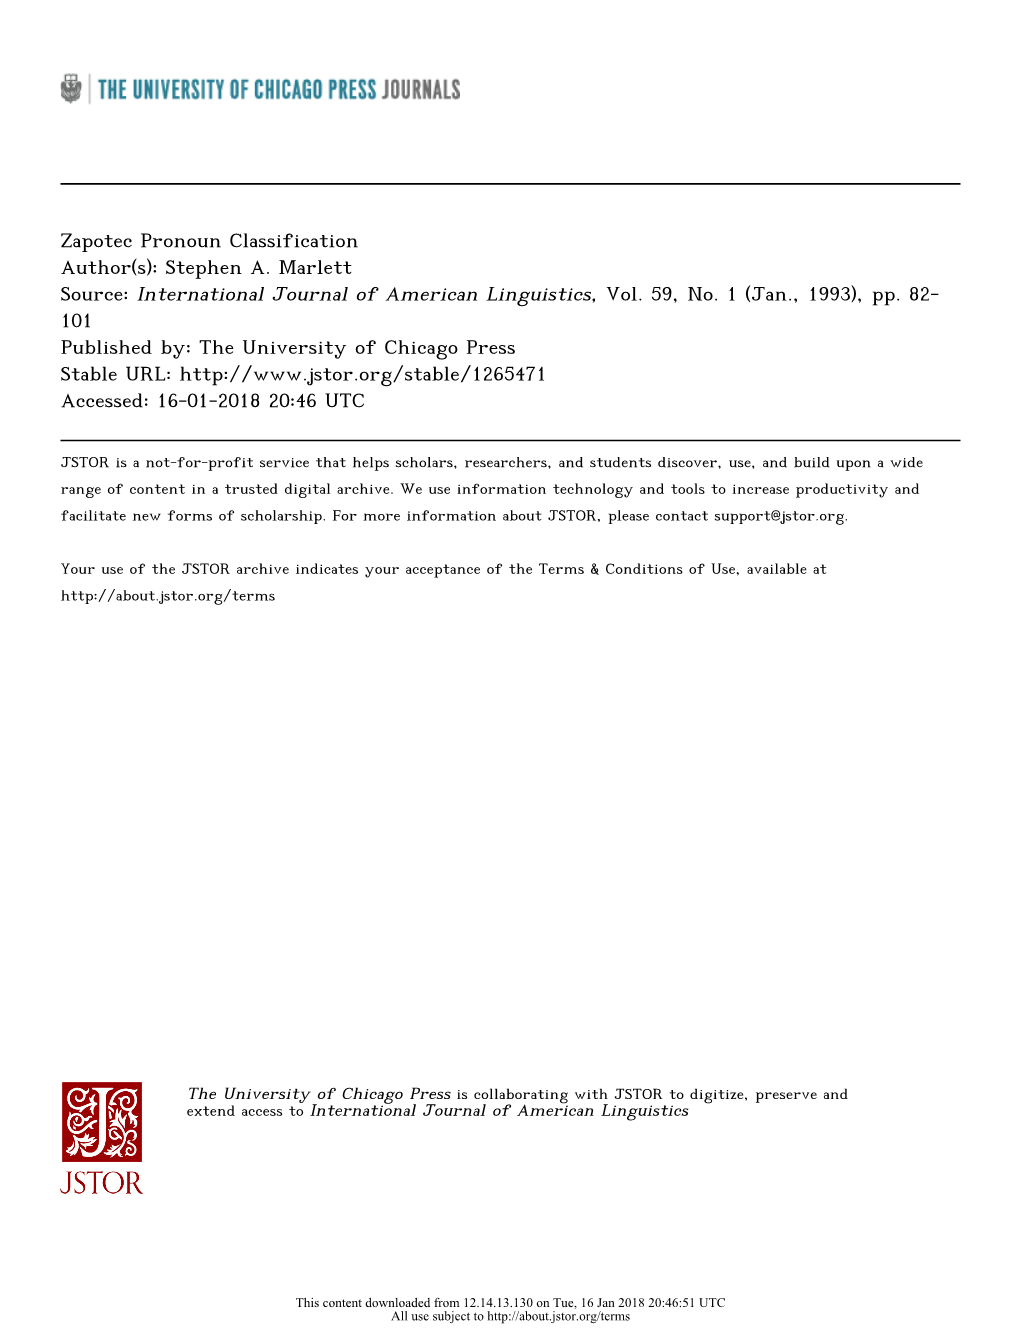 Zapotec Pronoun Classification Author(S): Stephen A